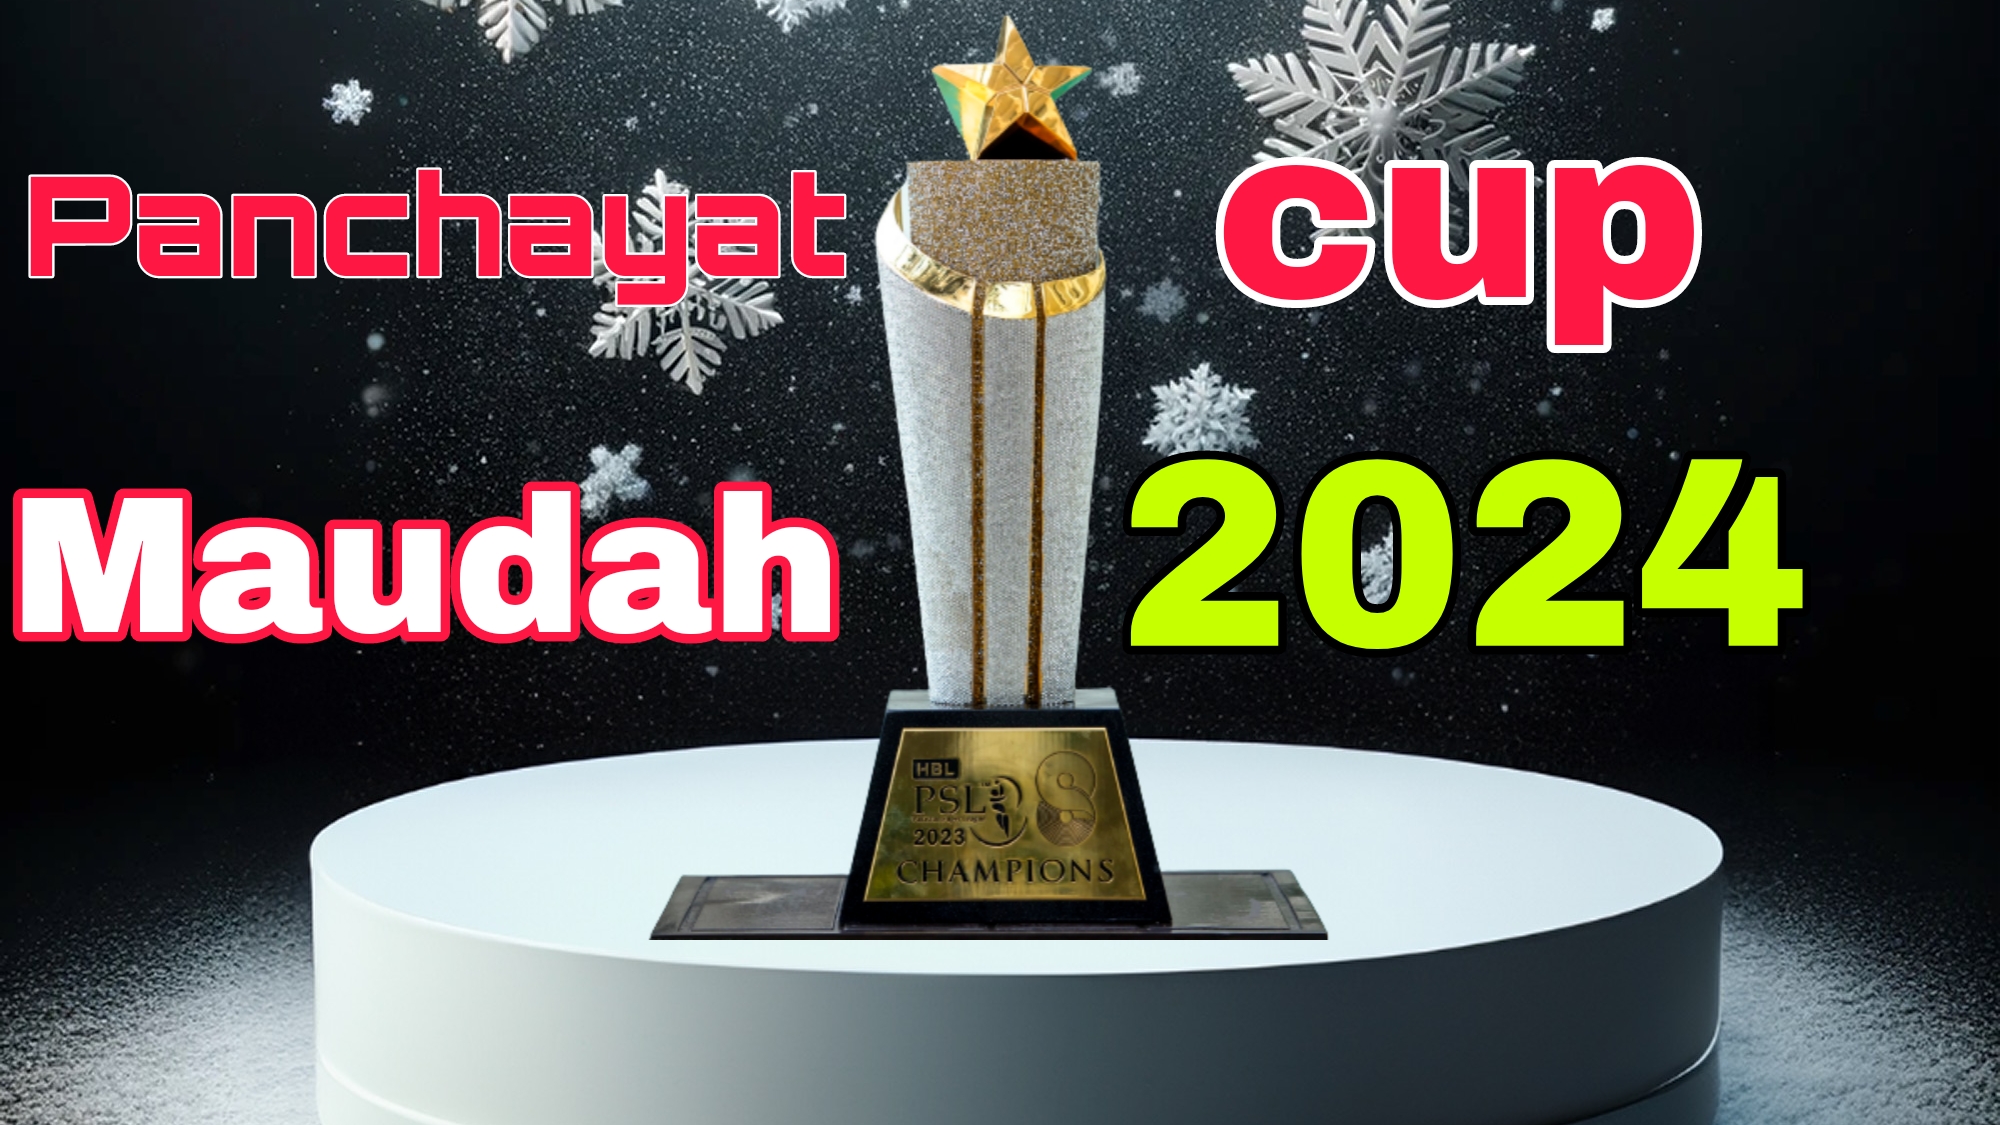 PANCHAYAT CUP 2024